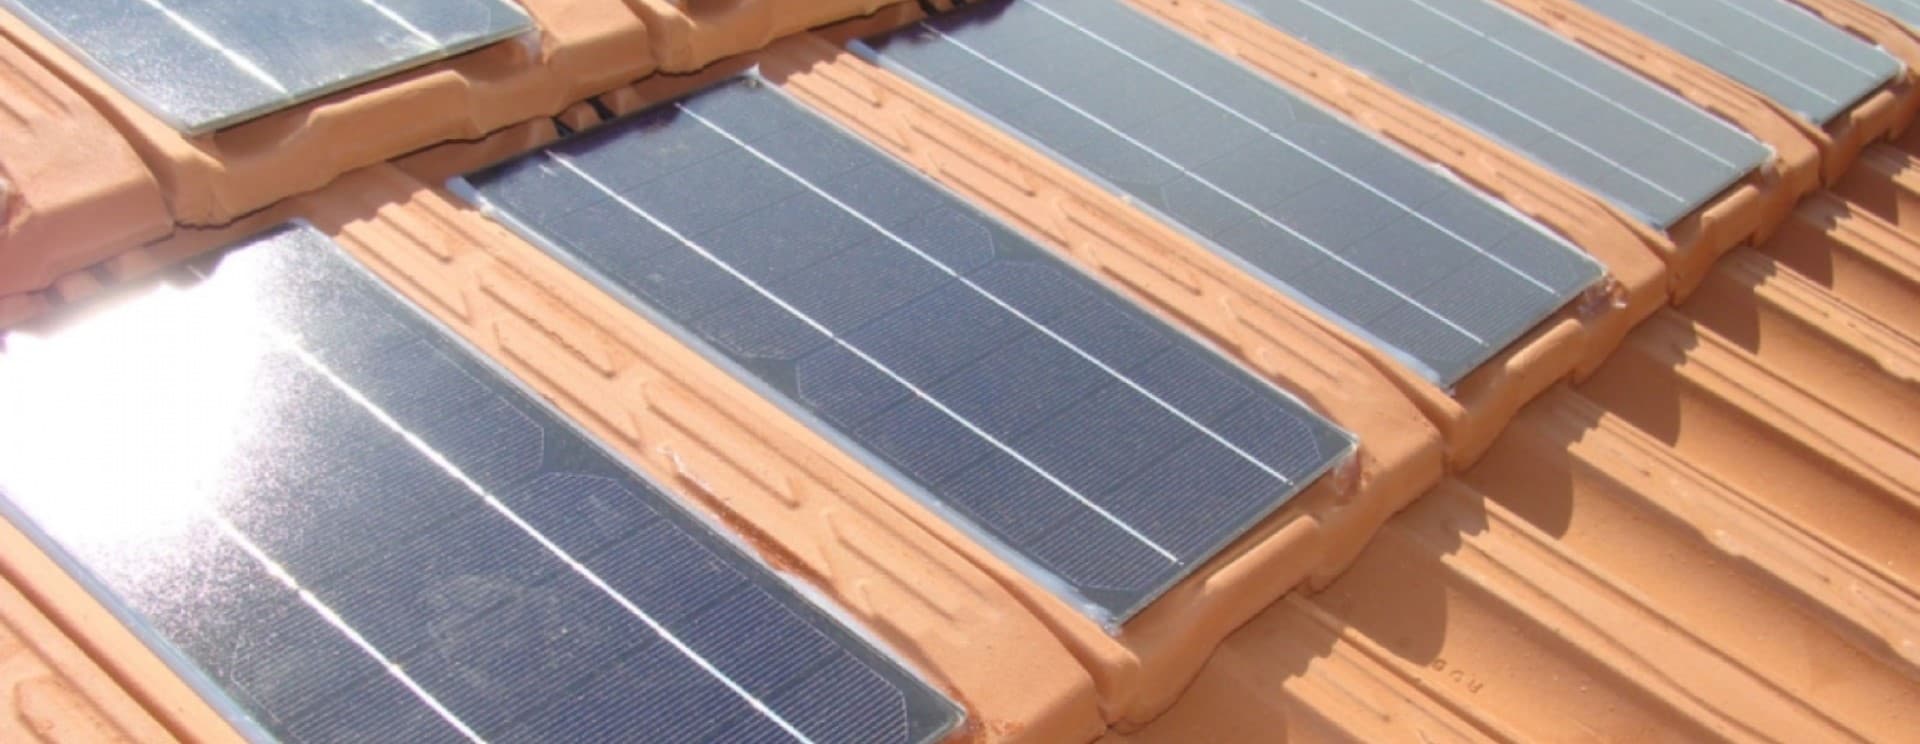 telhado solar com painéis solares